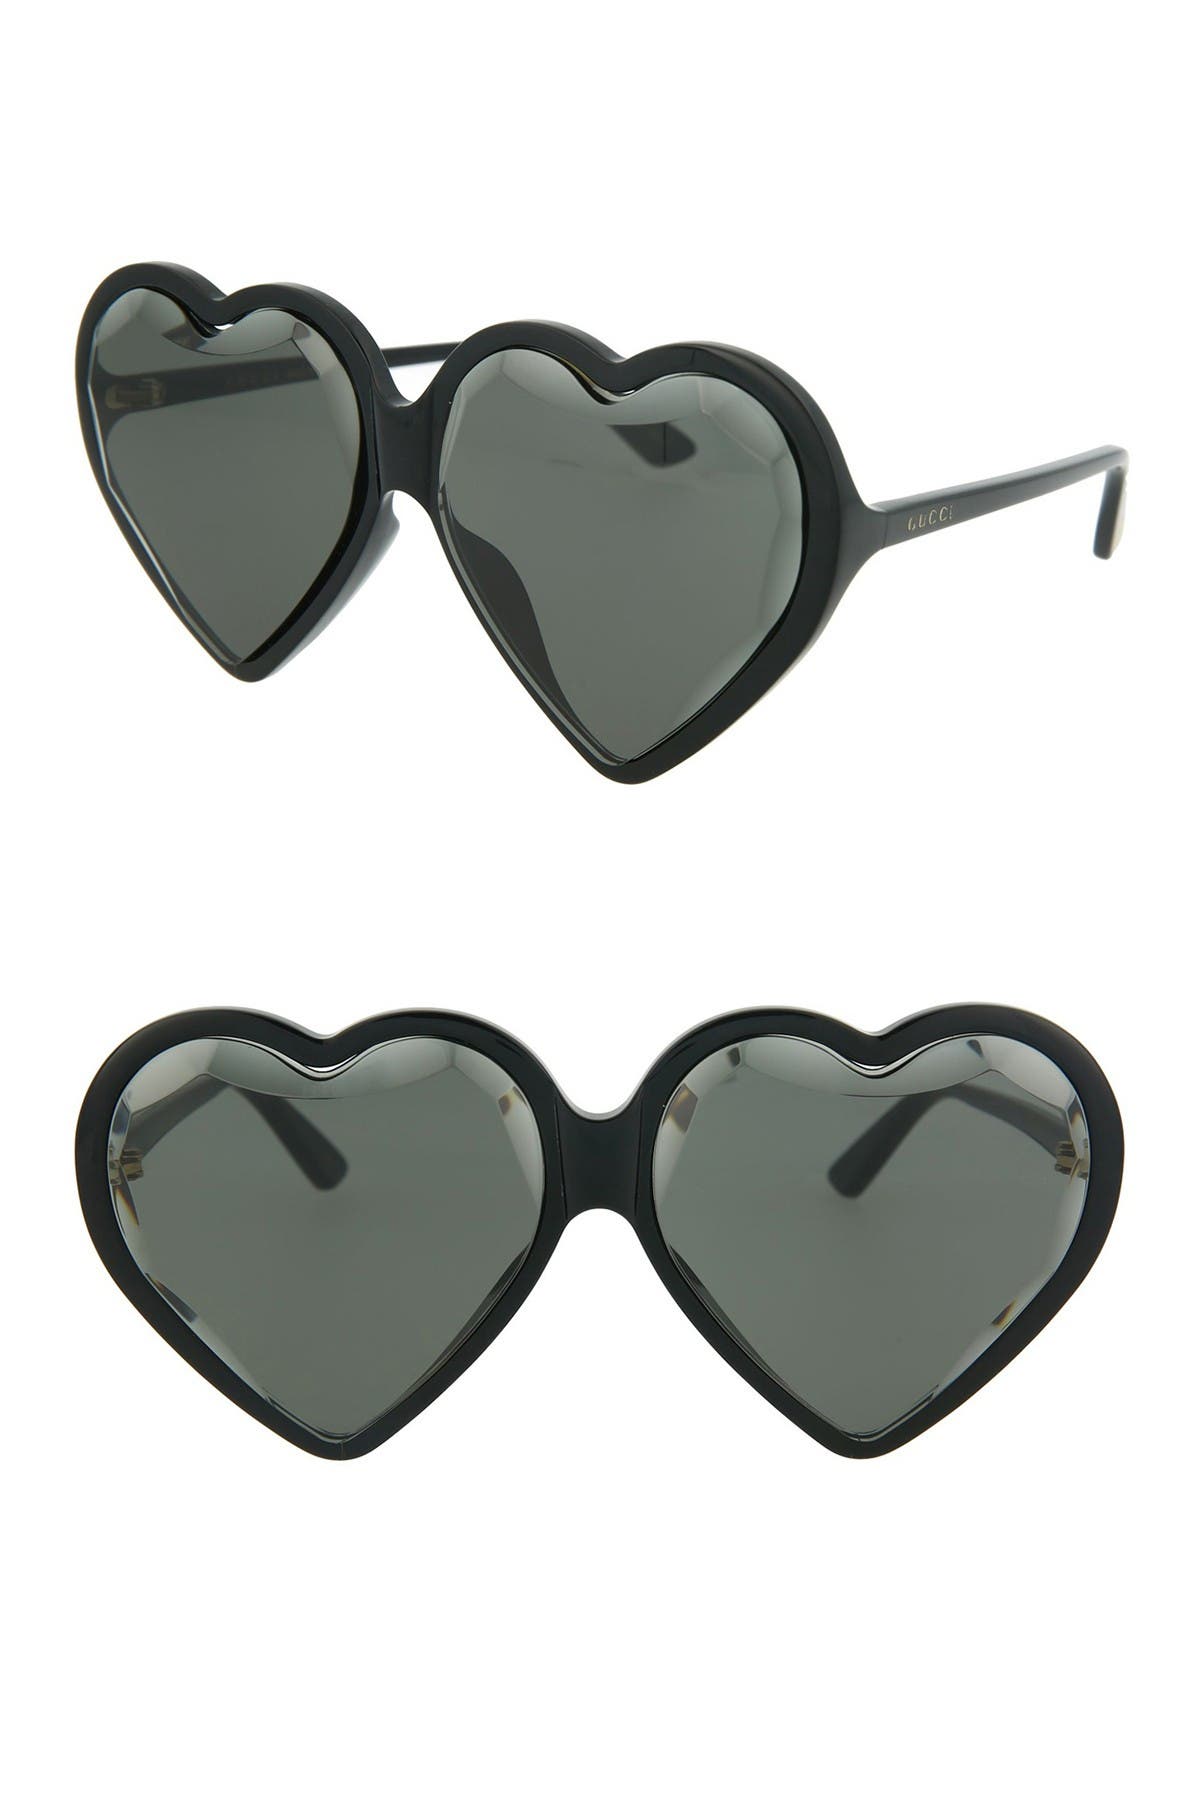 gucci heart sunglasses black